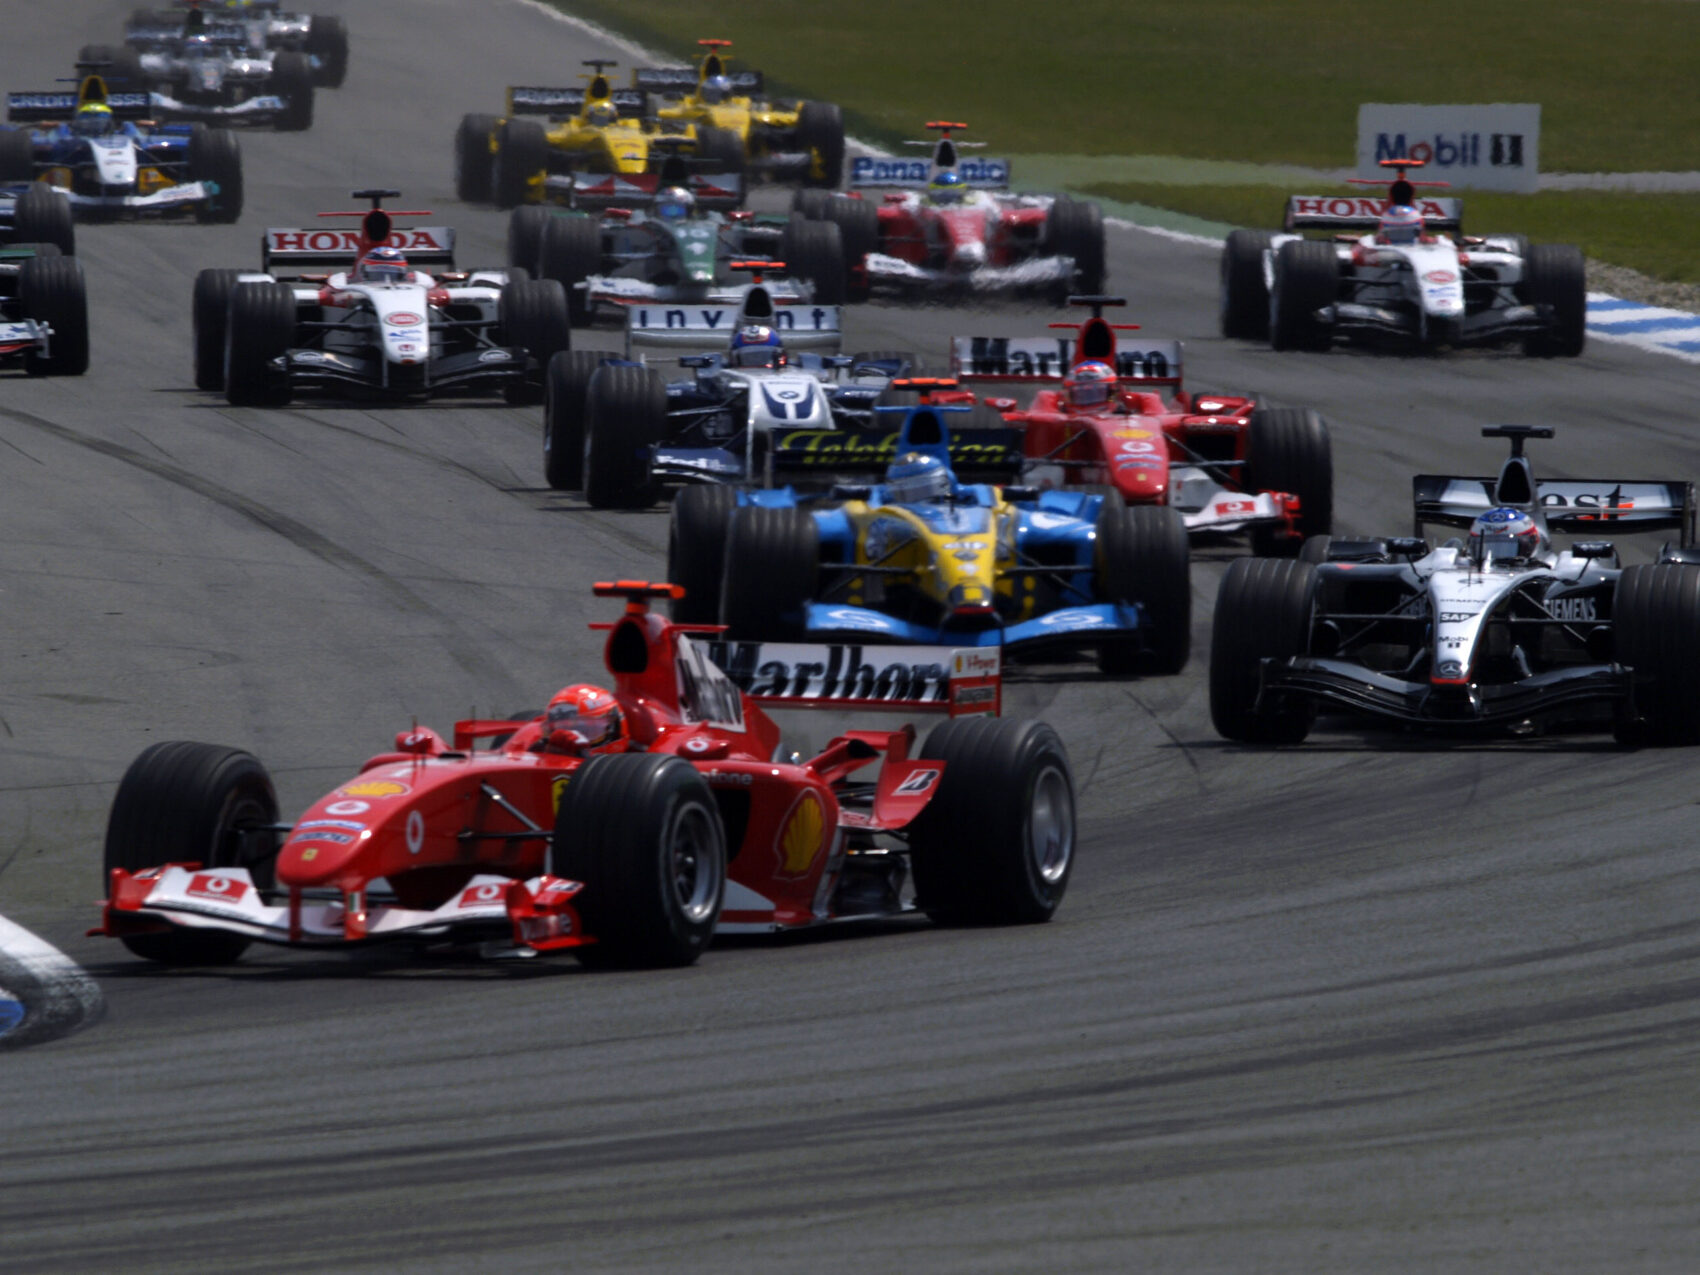 Michael Schumacher, Ferrari, Kimi Räikkönen, McLaren, Jarno Trulli, Renault, Német Nagydíj, 2004, rajt